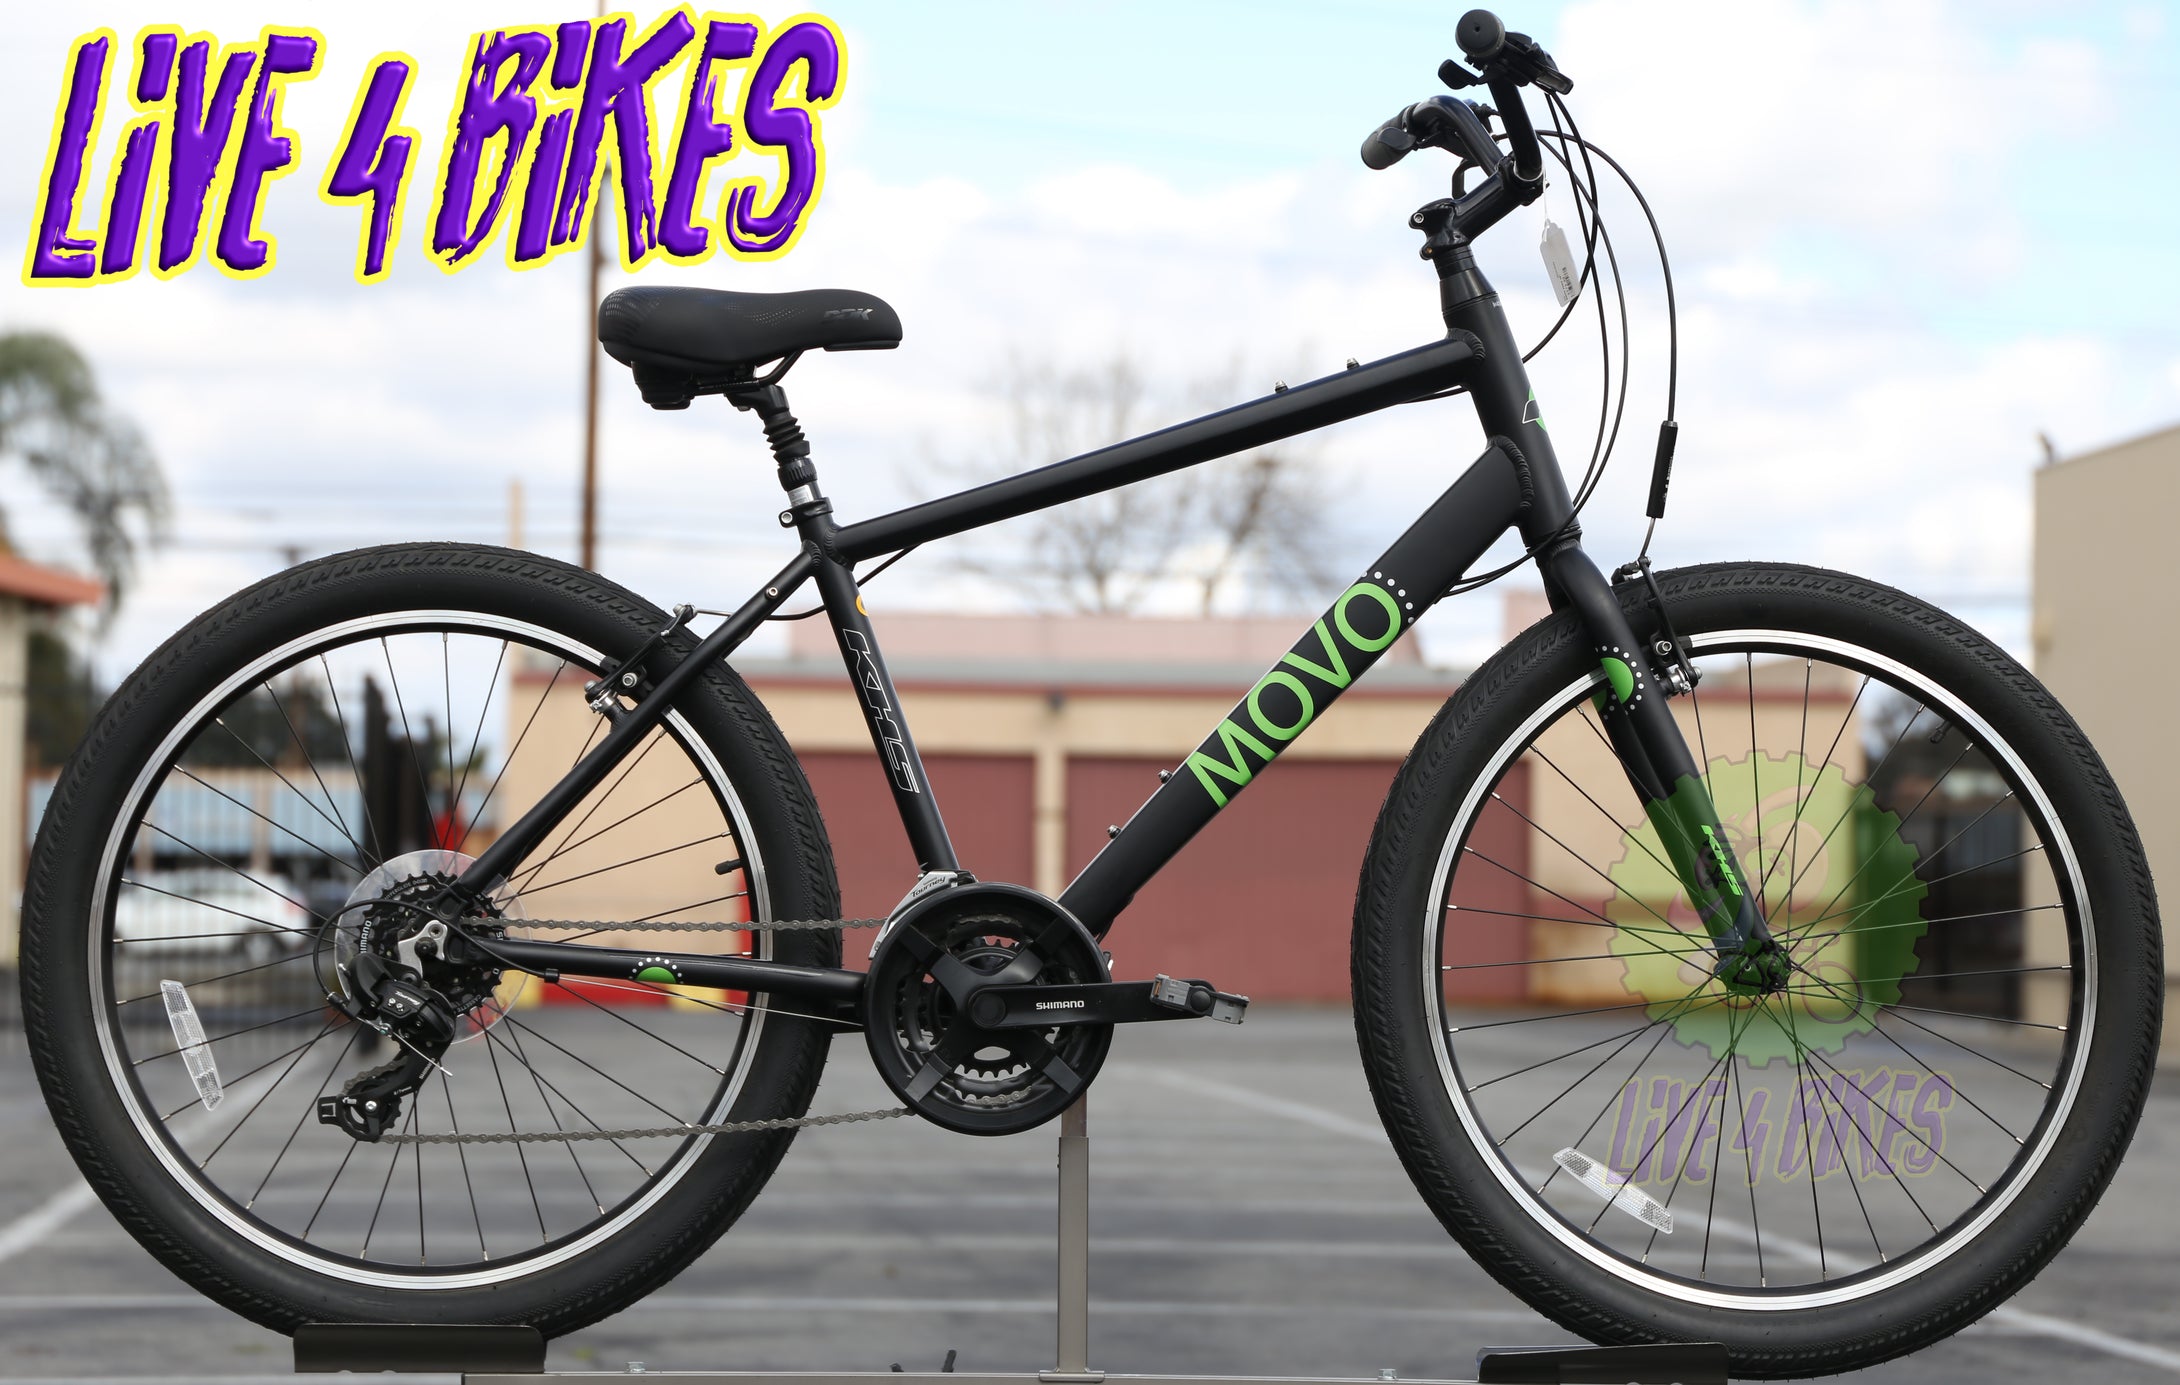 Khs Movo Zer.0 Zero Comfort city Bike -Live 4 Bikes